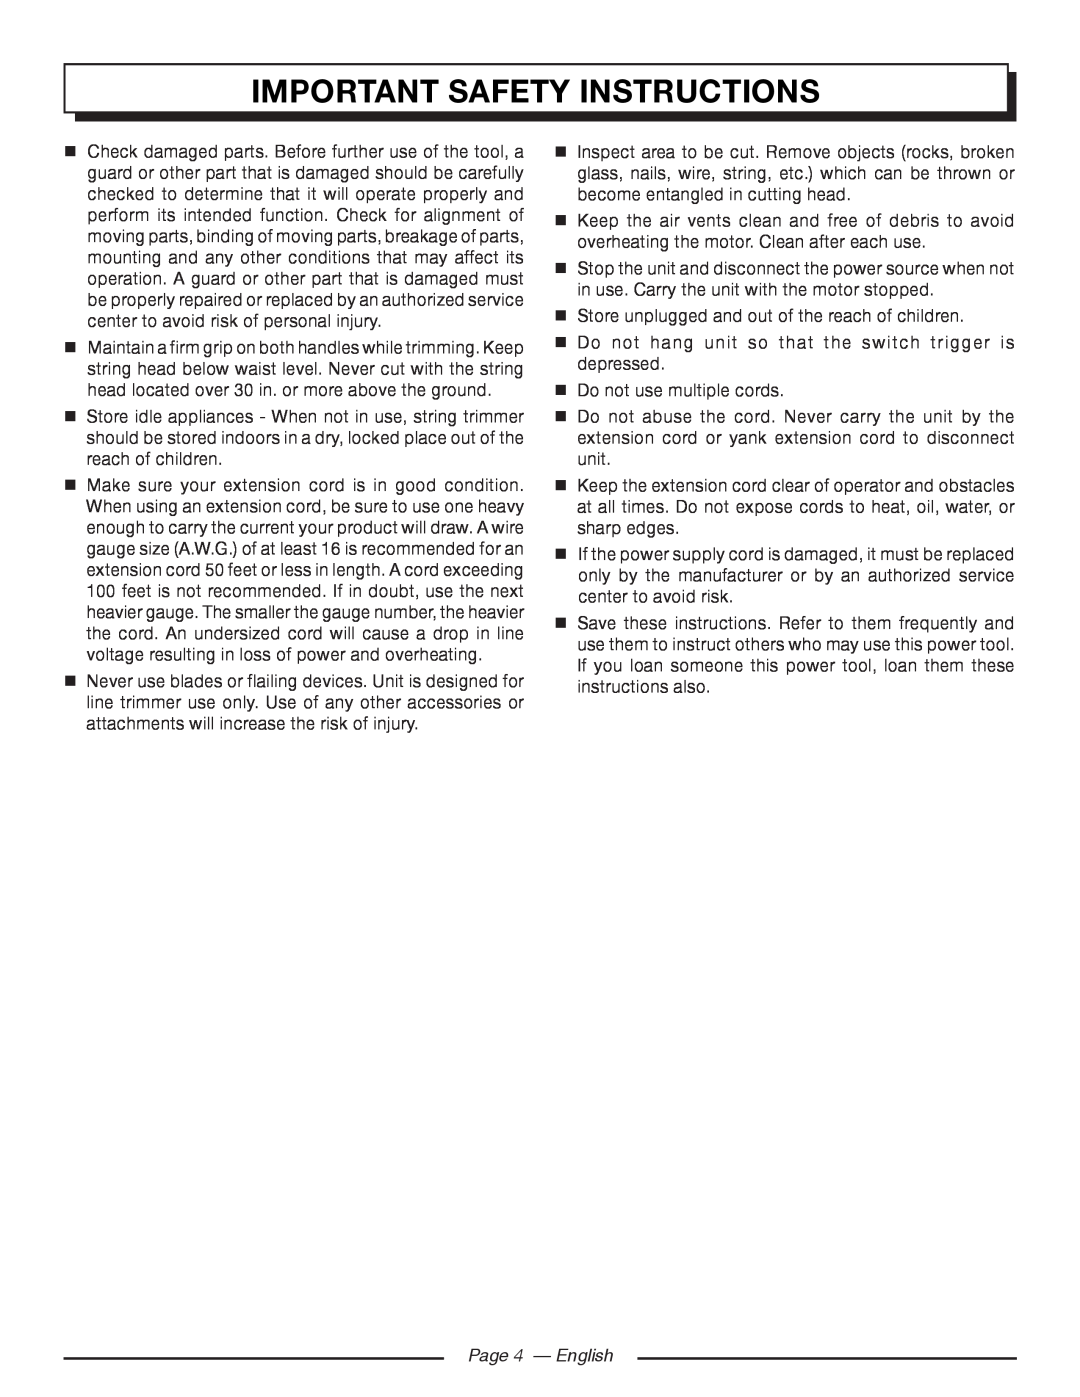 Homelite UT41112 manuel dutilisation Page 4 - English, Important Safety Instructions 